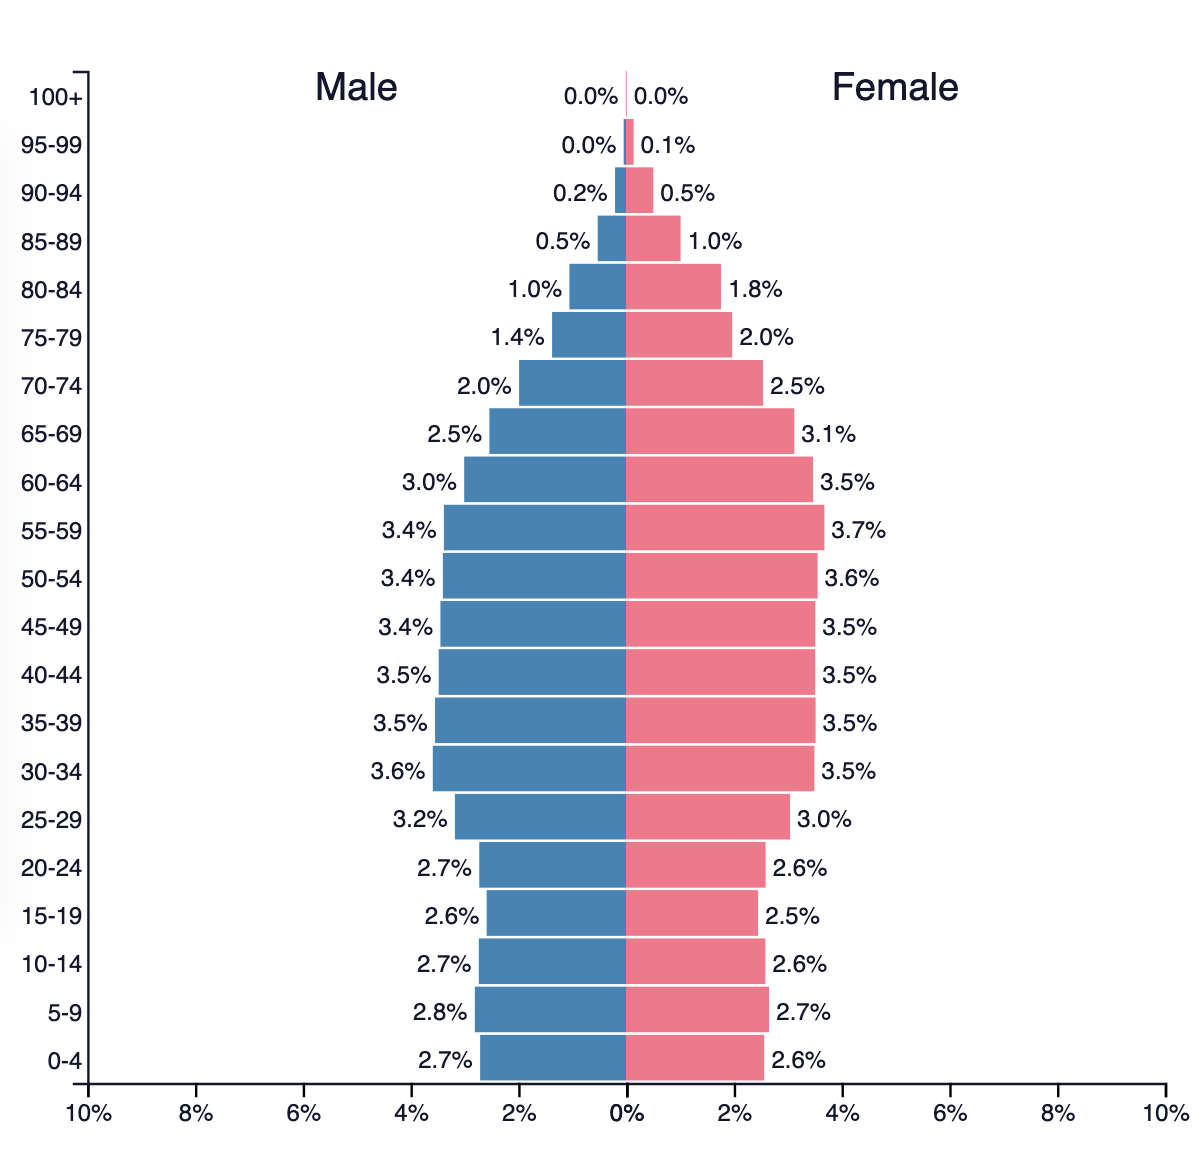 Åldersdiagram över Europas befolkning där män och kvinnor jämförs